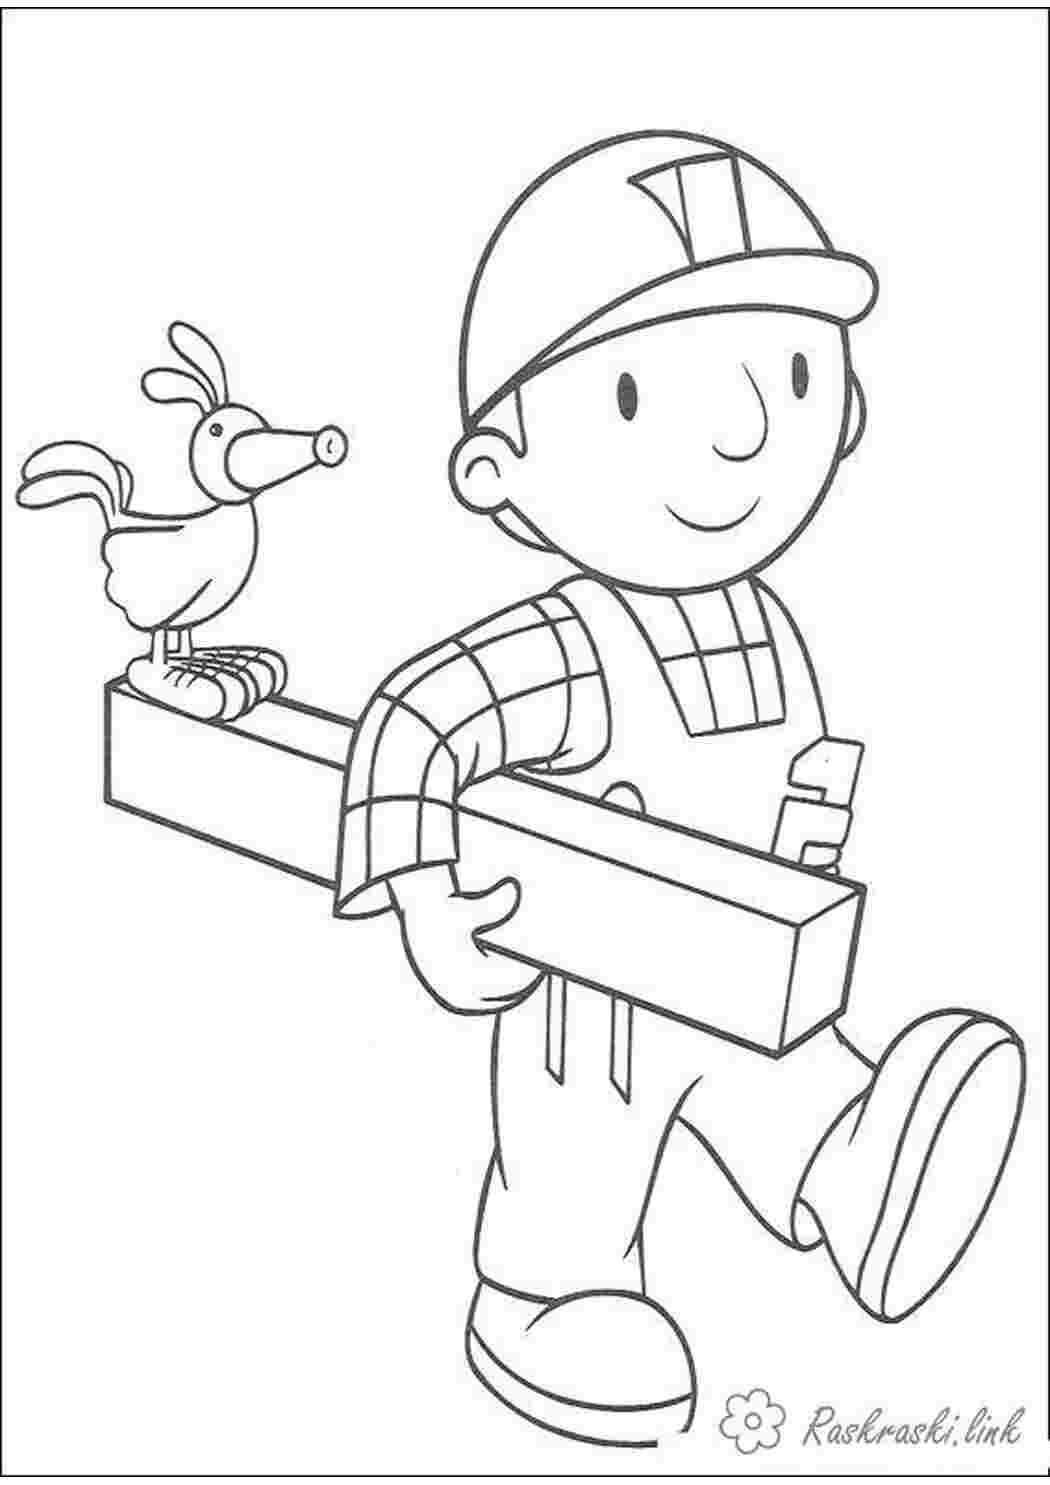 Раскраски праздник 1 июня день защиты детей мальчик работник плотник птица Раскраски 1 июня день защиты детей 